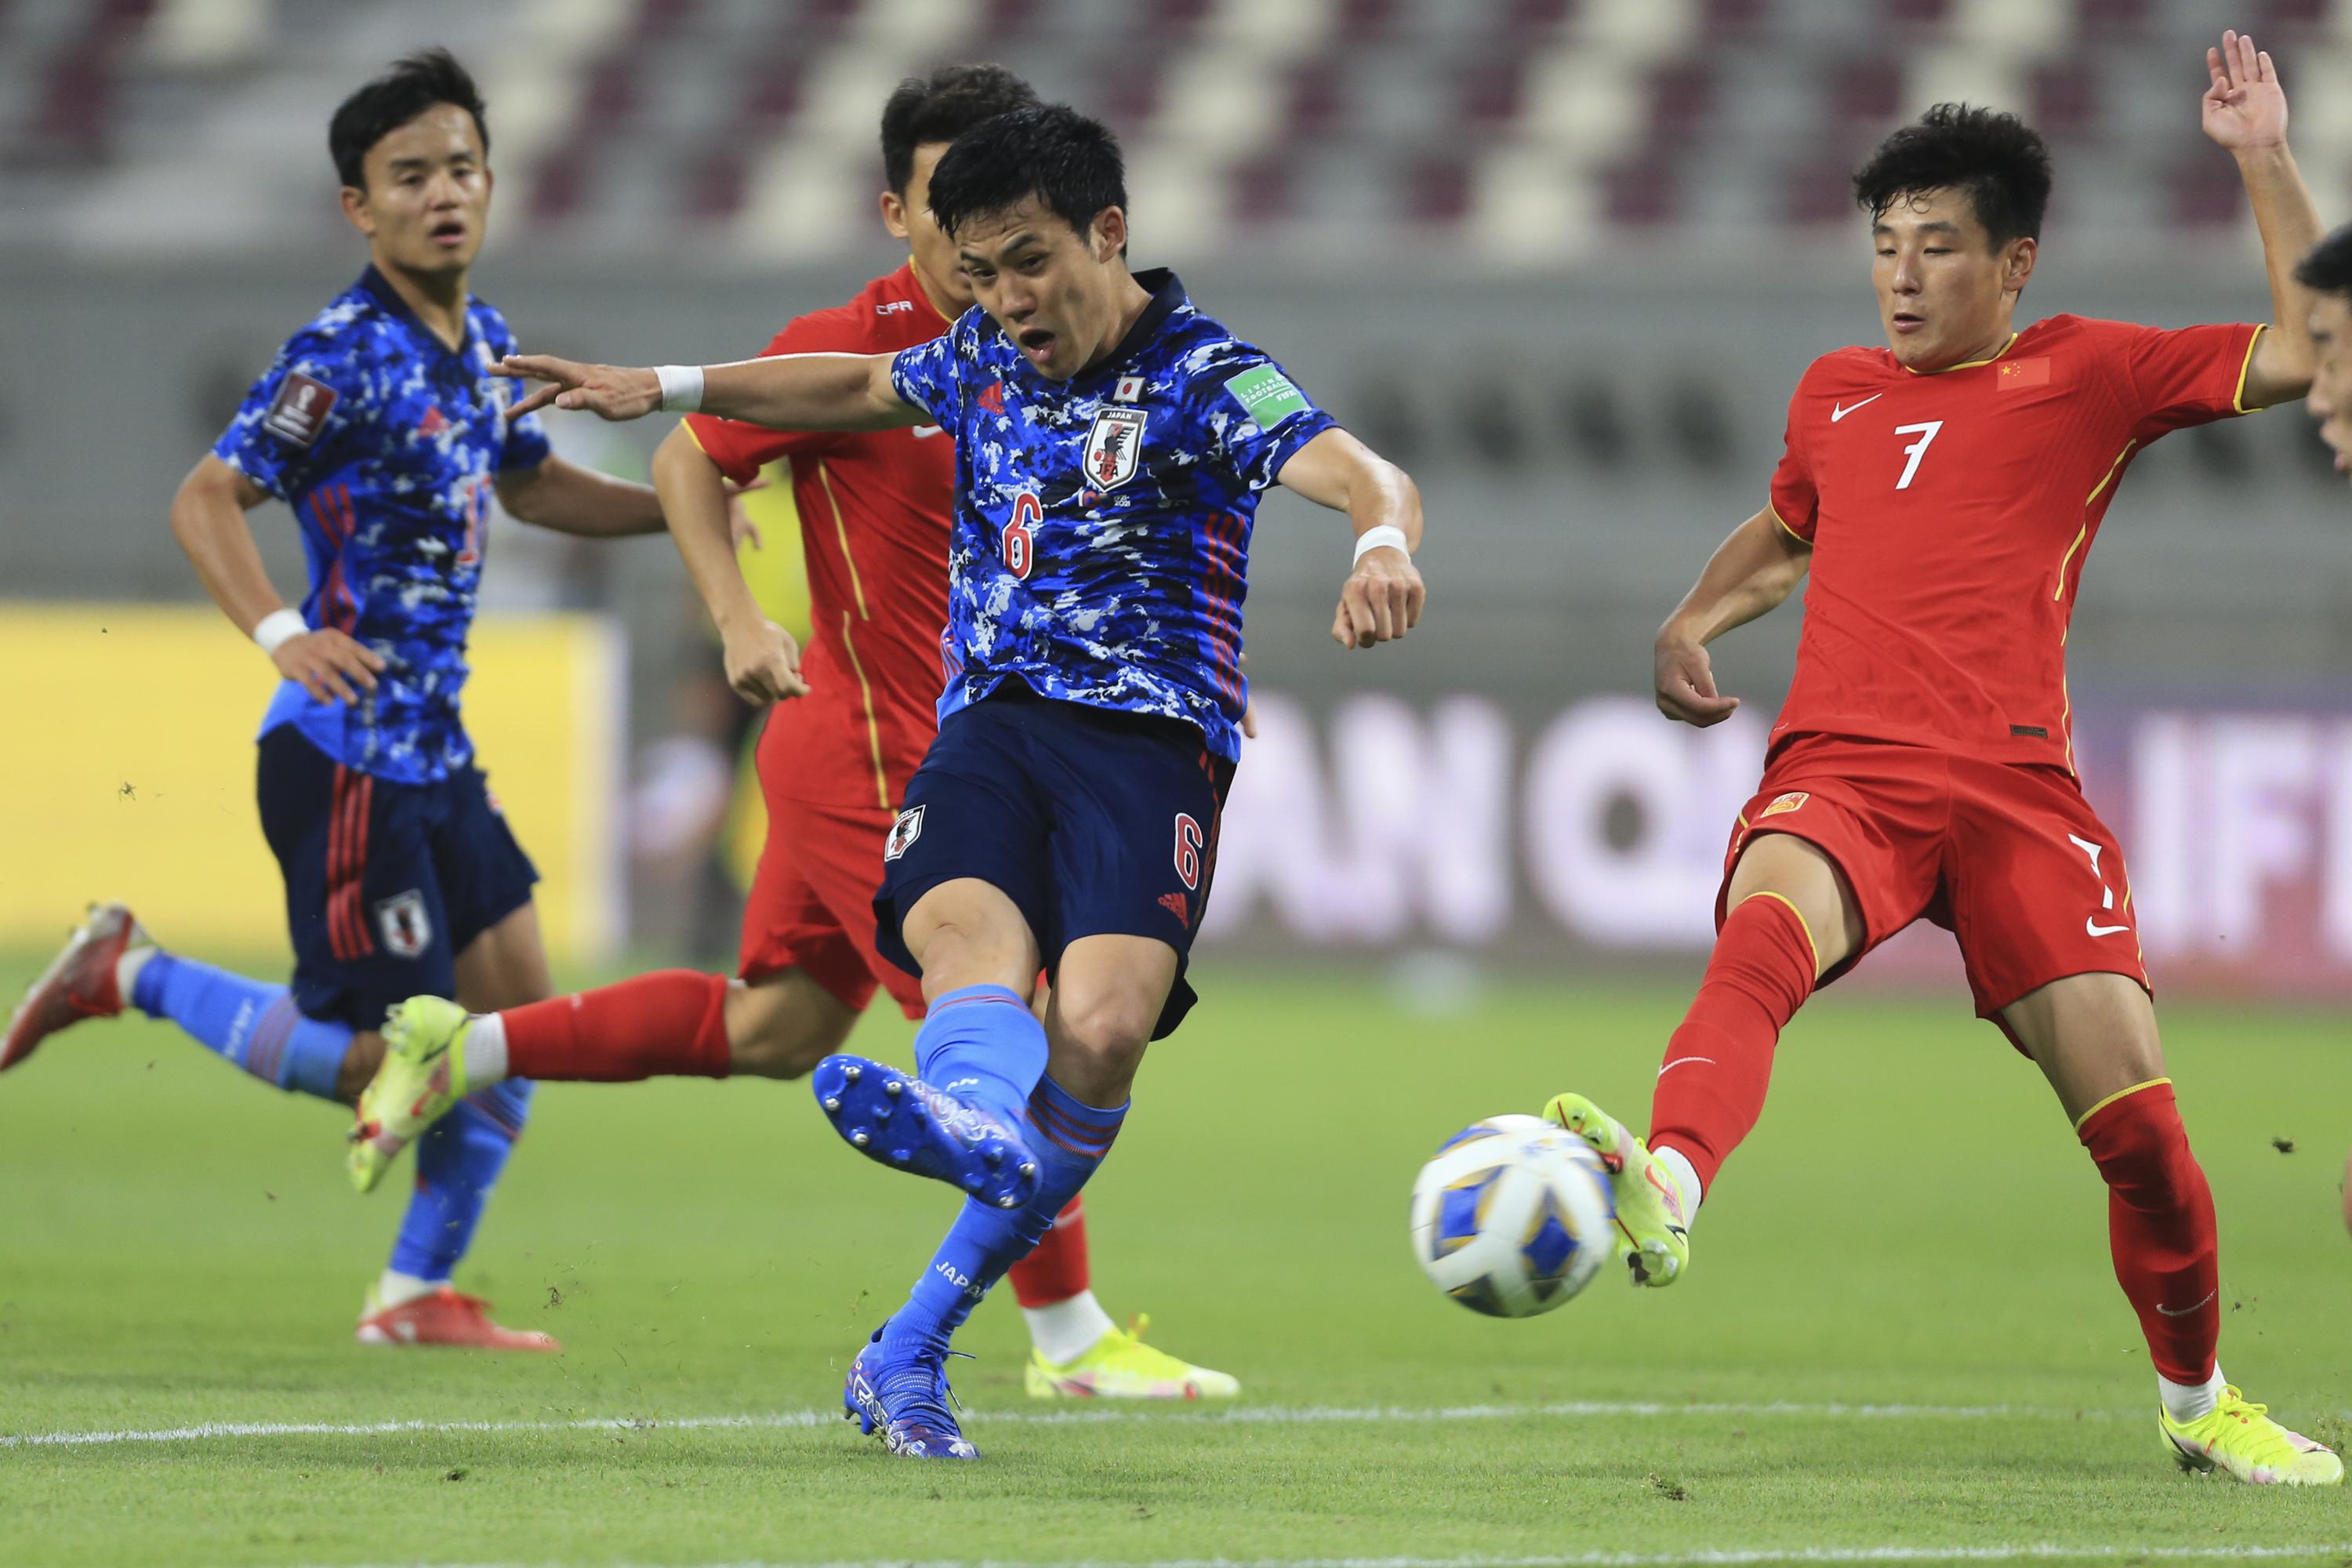 Australia South Korea Japan Complete 1 0 Wc Qualifier Wins Ap News